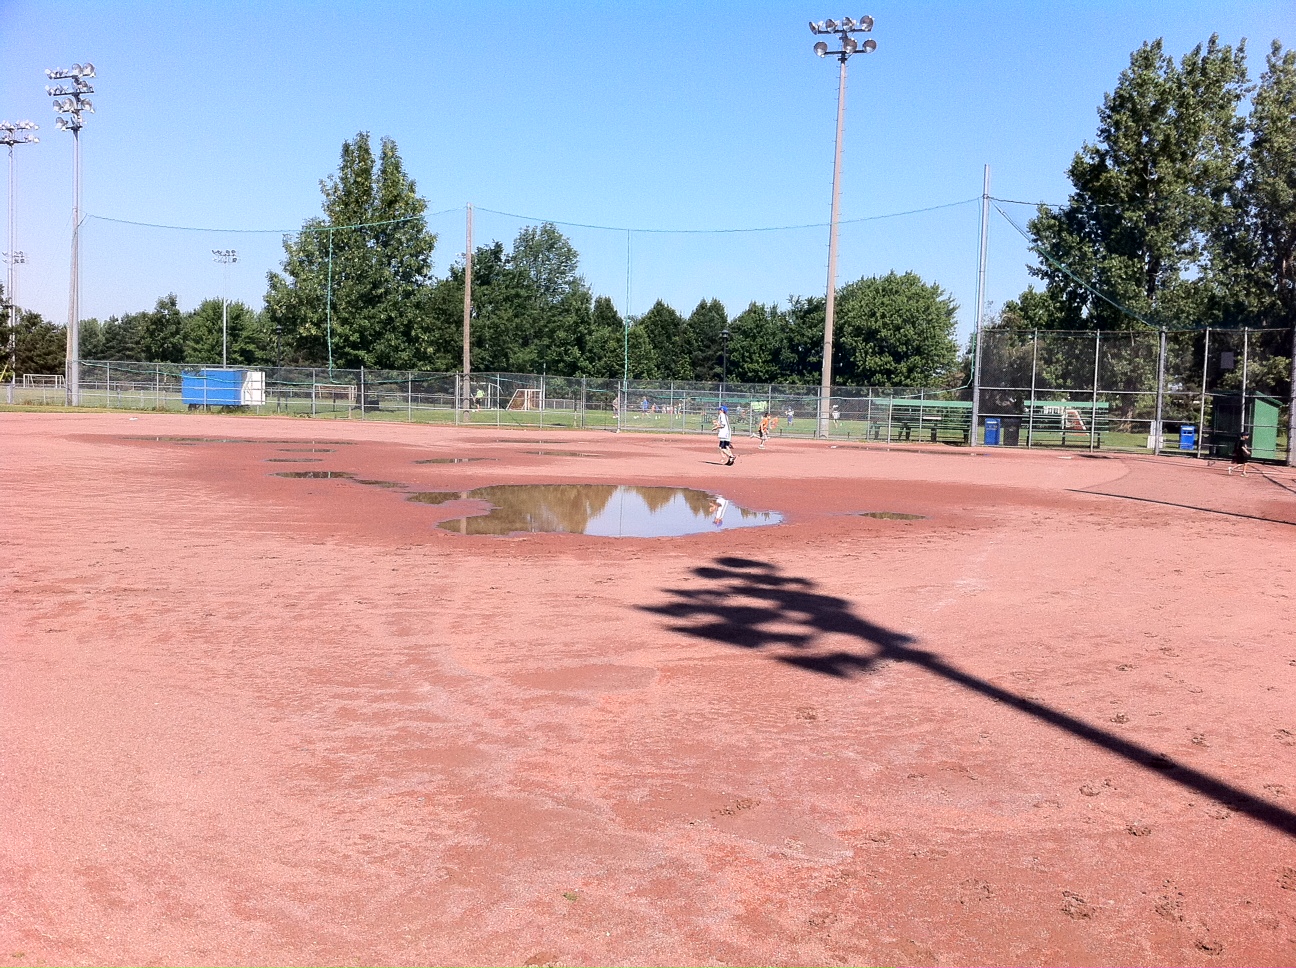 Problématique de drainage sur un terrain sportif